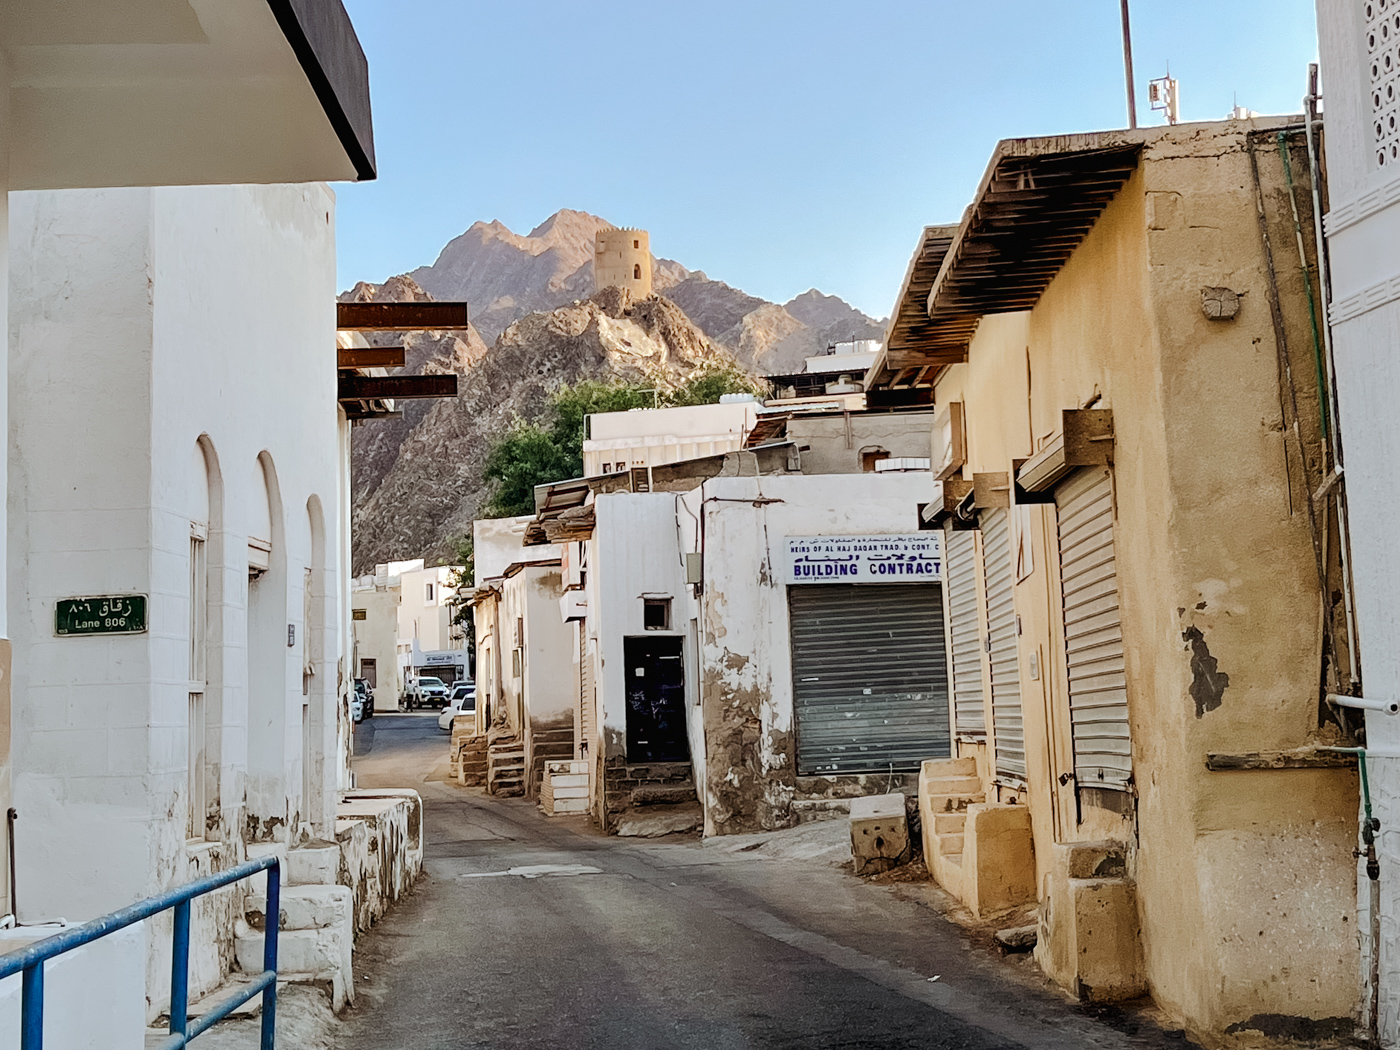 Rondreis Oman 10 dagen Muscat 2